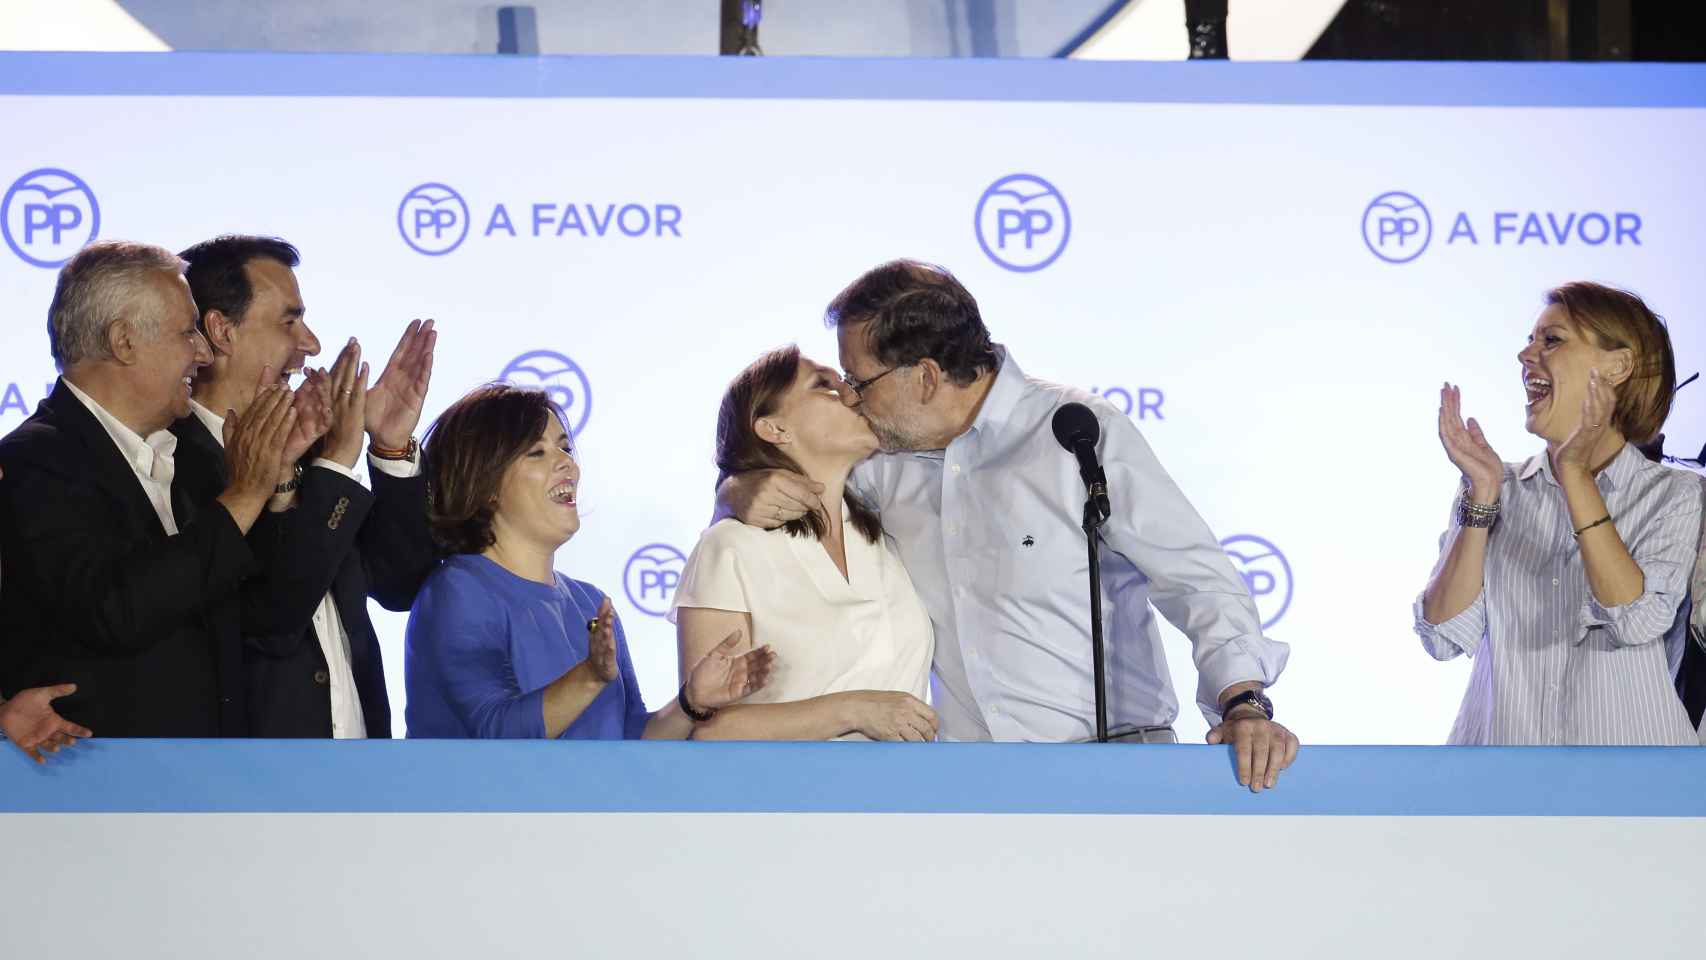 Rajoy y Elvira se besan ante la cara de sorpresa de Arenas, Maillo, Soraya y Dolores de Cospedal